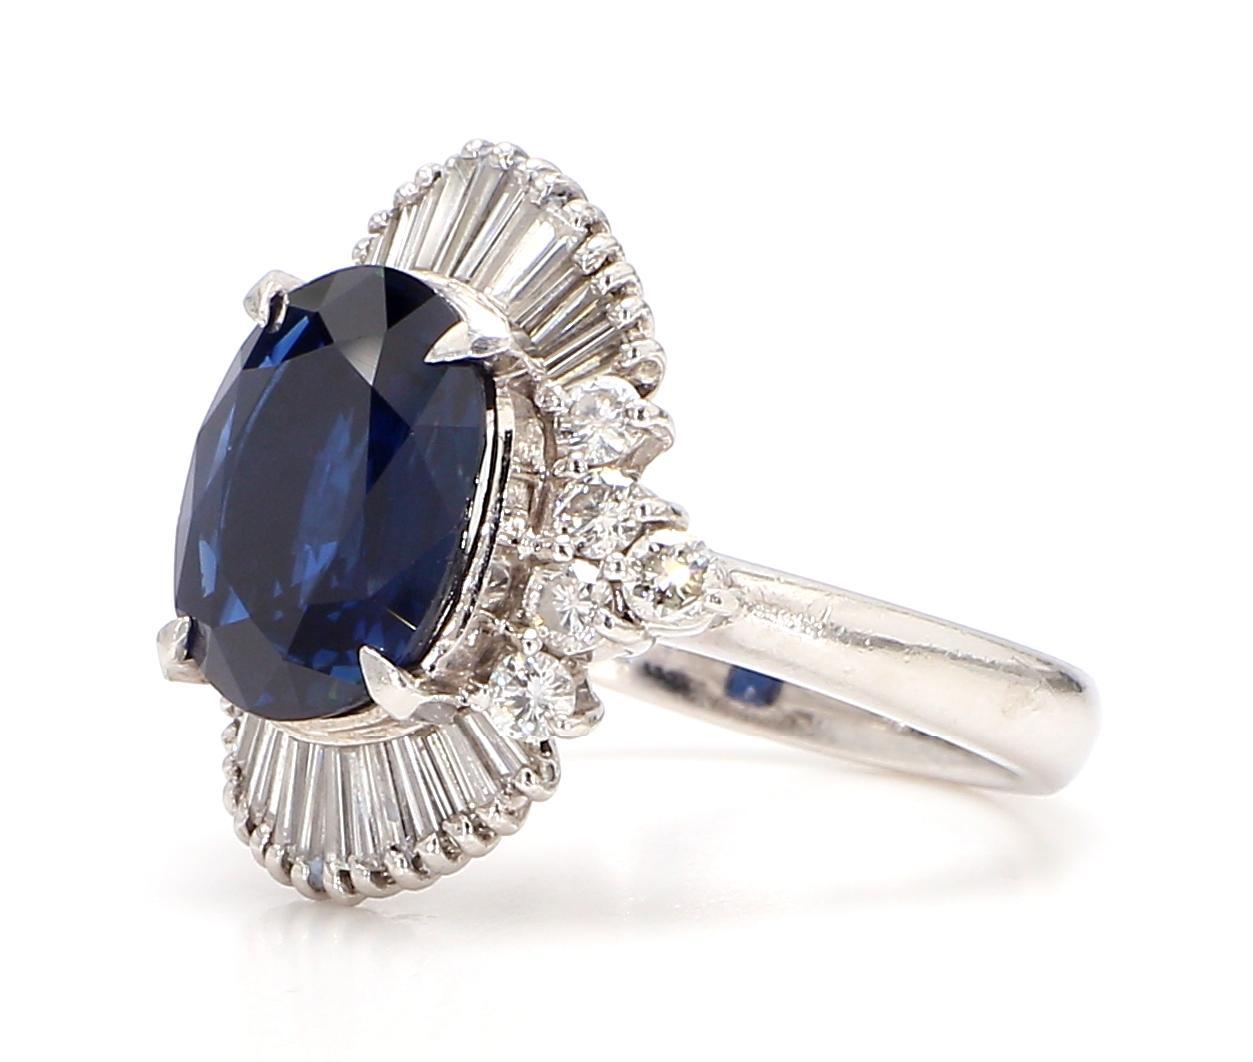 Dieser exquisite Ring aus Diamant und blauem Saphir ist ein atemberaubendes Schmuckstück, das Eleganz, Schönheit und Raffinesse vereint. Dieser mit viel Liebe zum Detail gefertigte Ring ist ein wahres Kunstwerk.

Das Herzstück dieses Rings ist ein